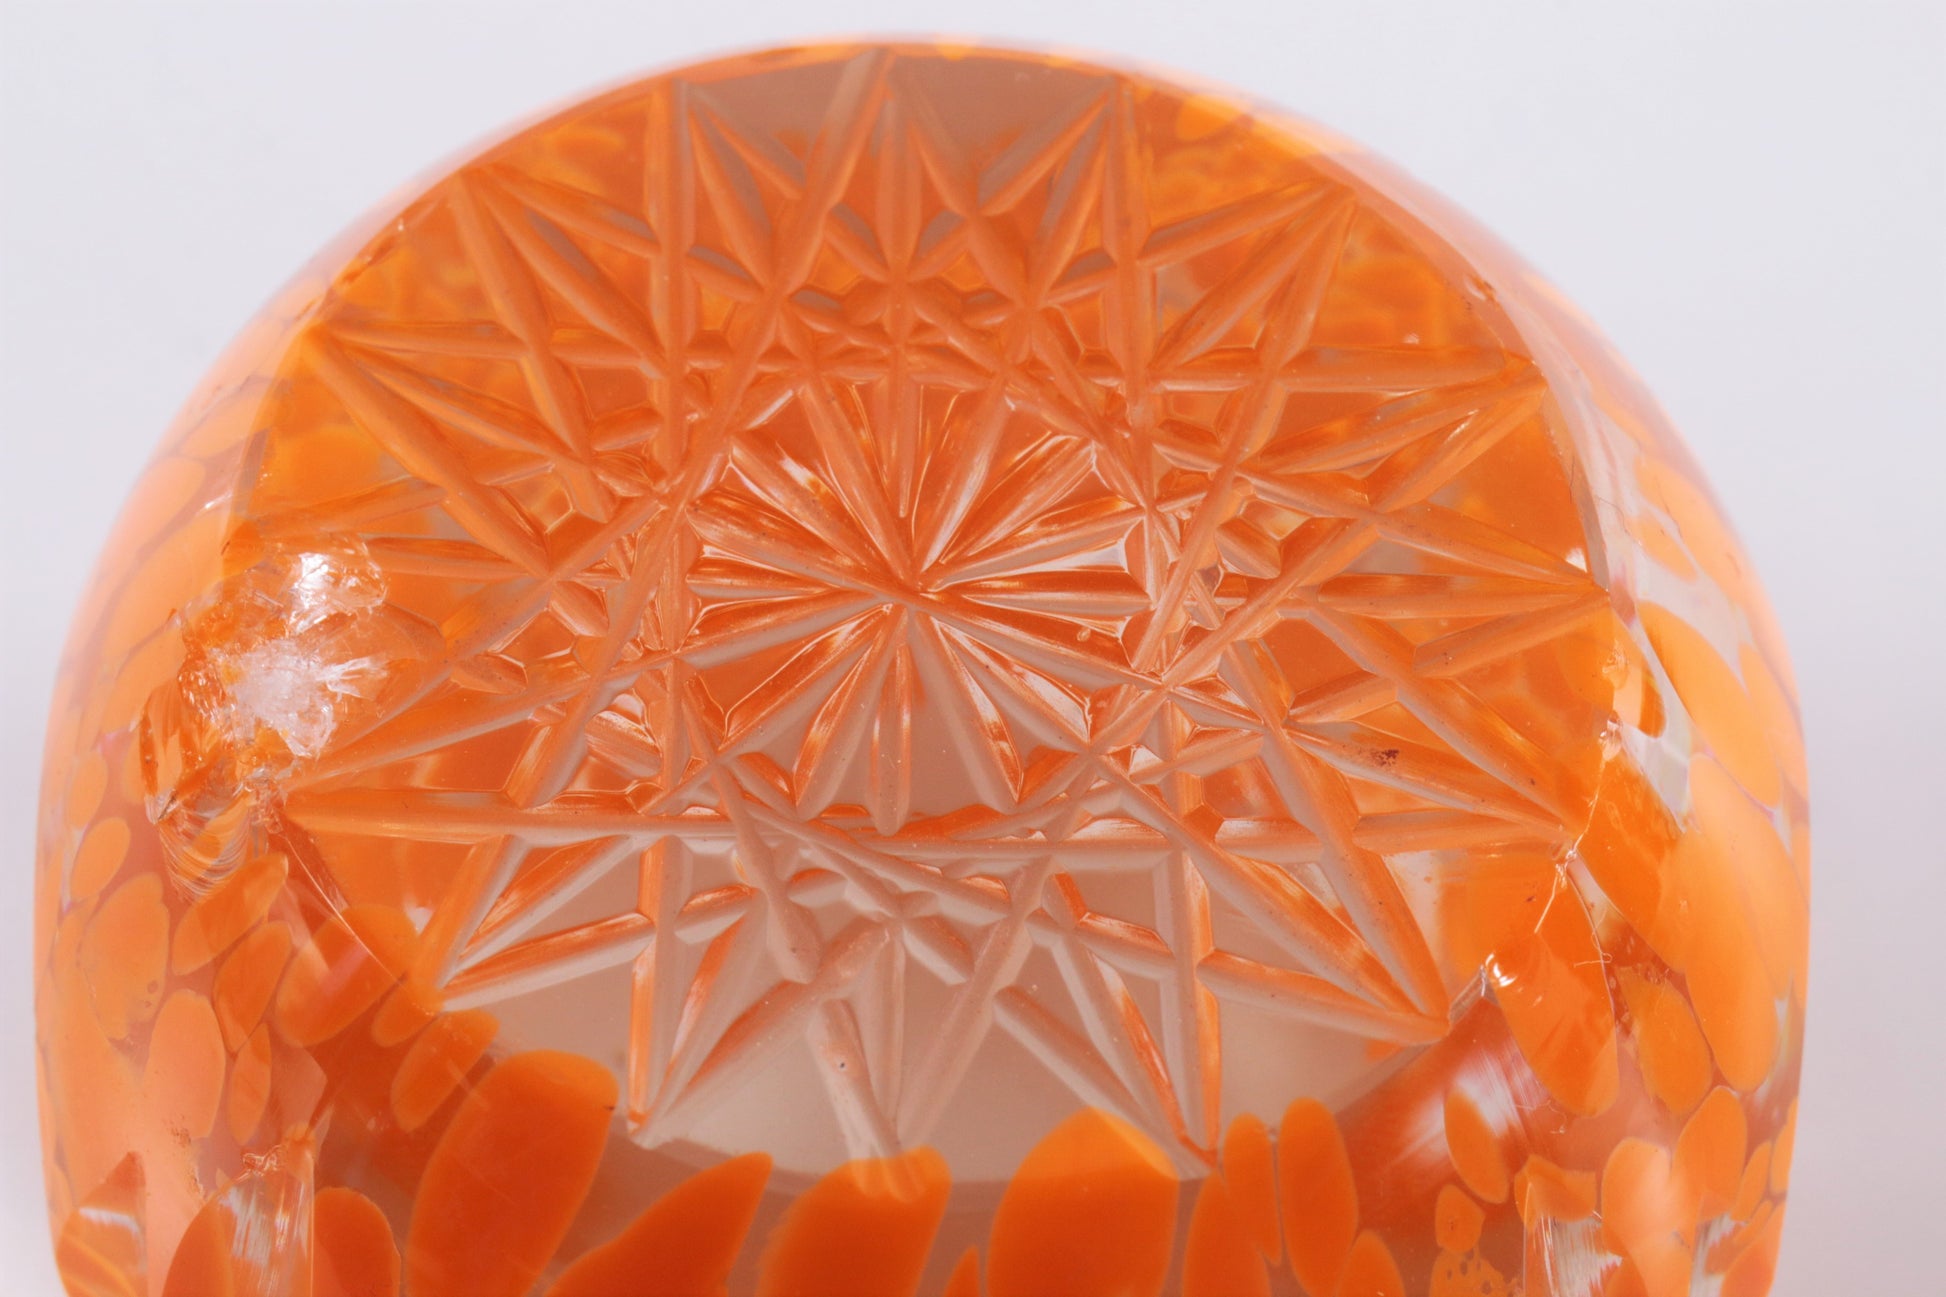 Paperweight met mooie strakke afwerking en prachtig oranje gekleurd.